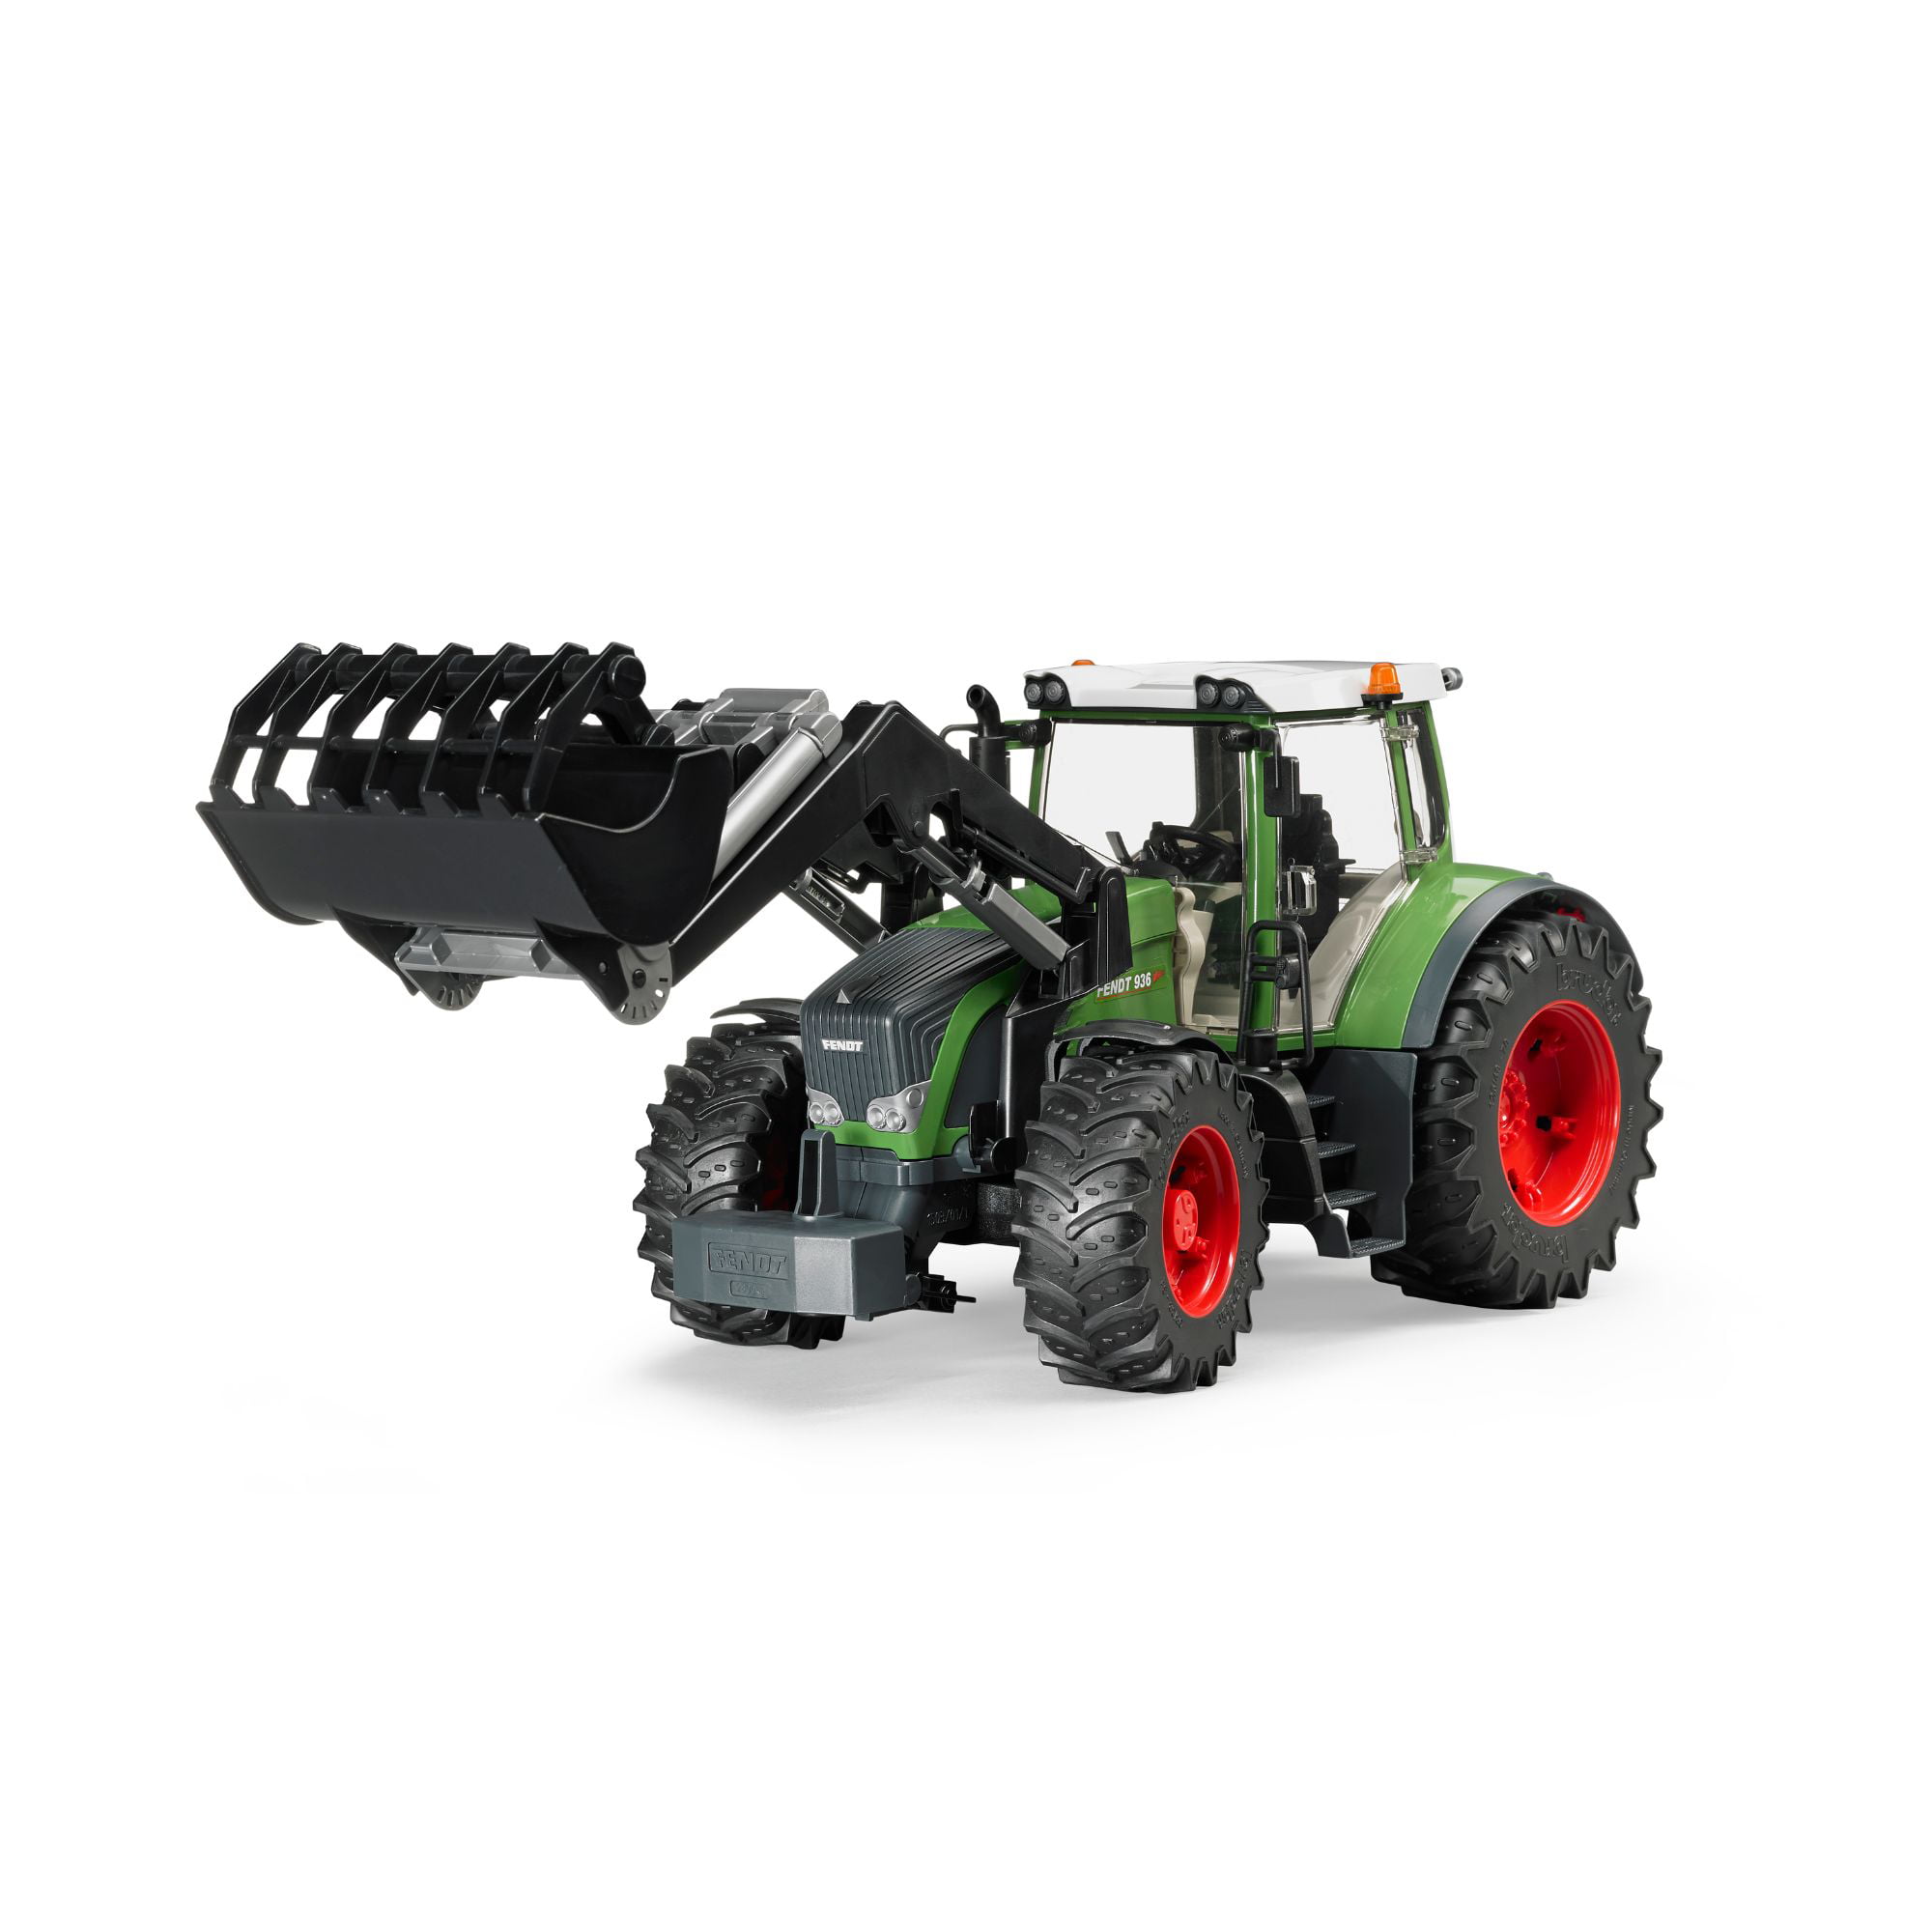 BRUDER 03041 Fendt 936 Vario Tractor With Frontloader 3041 for sale online 